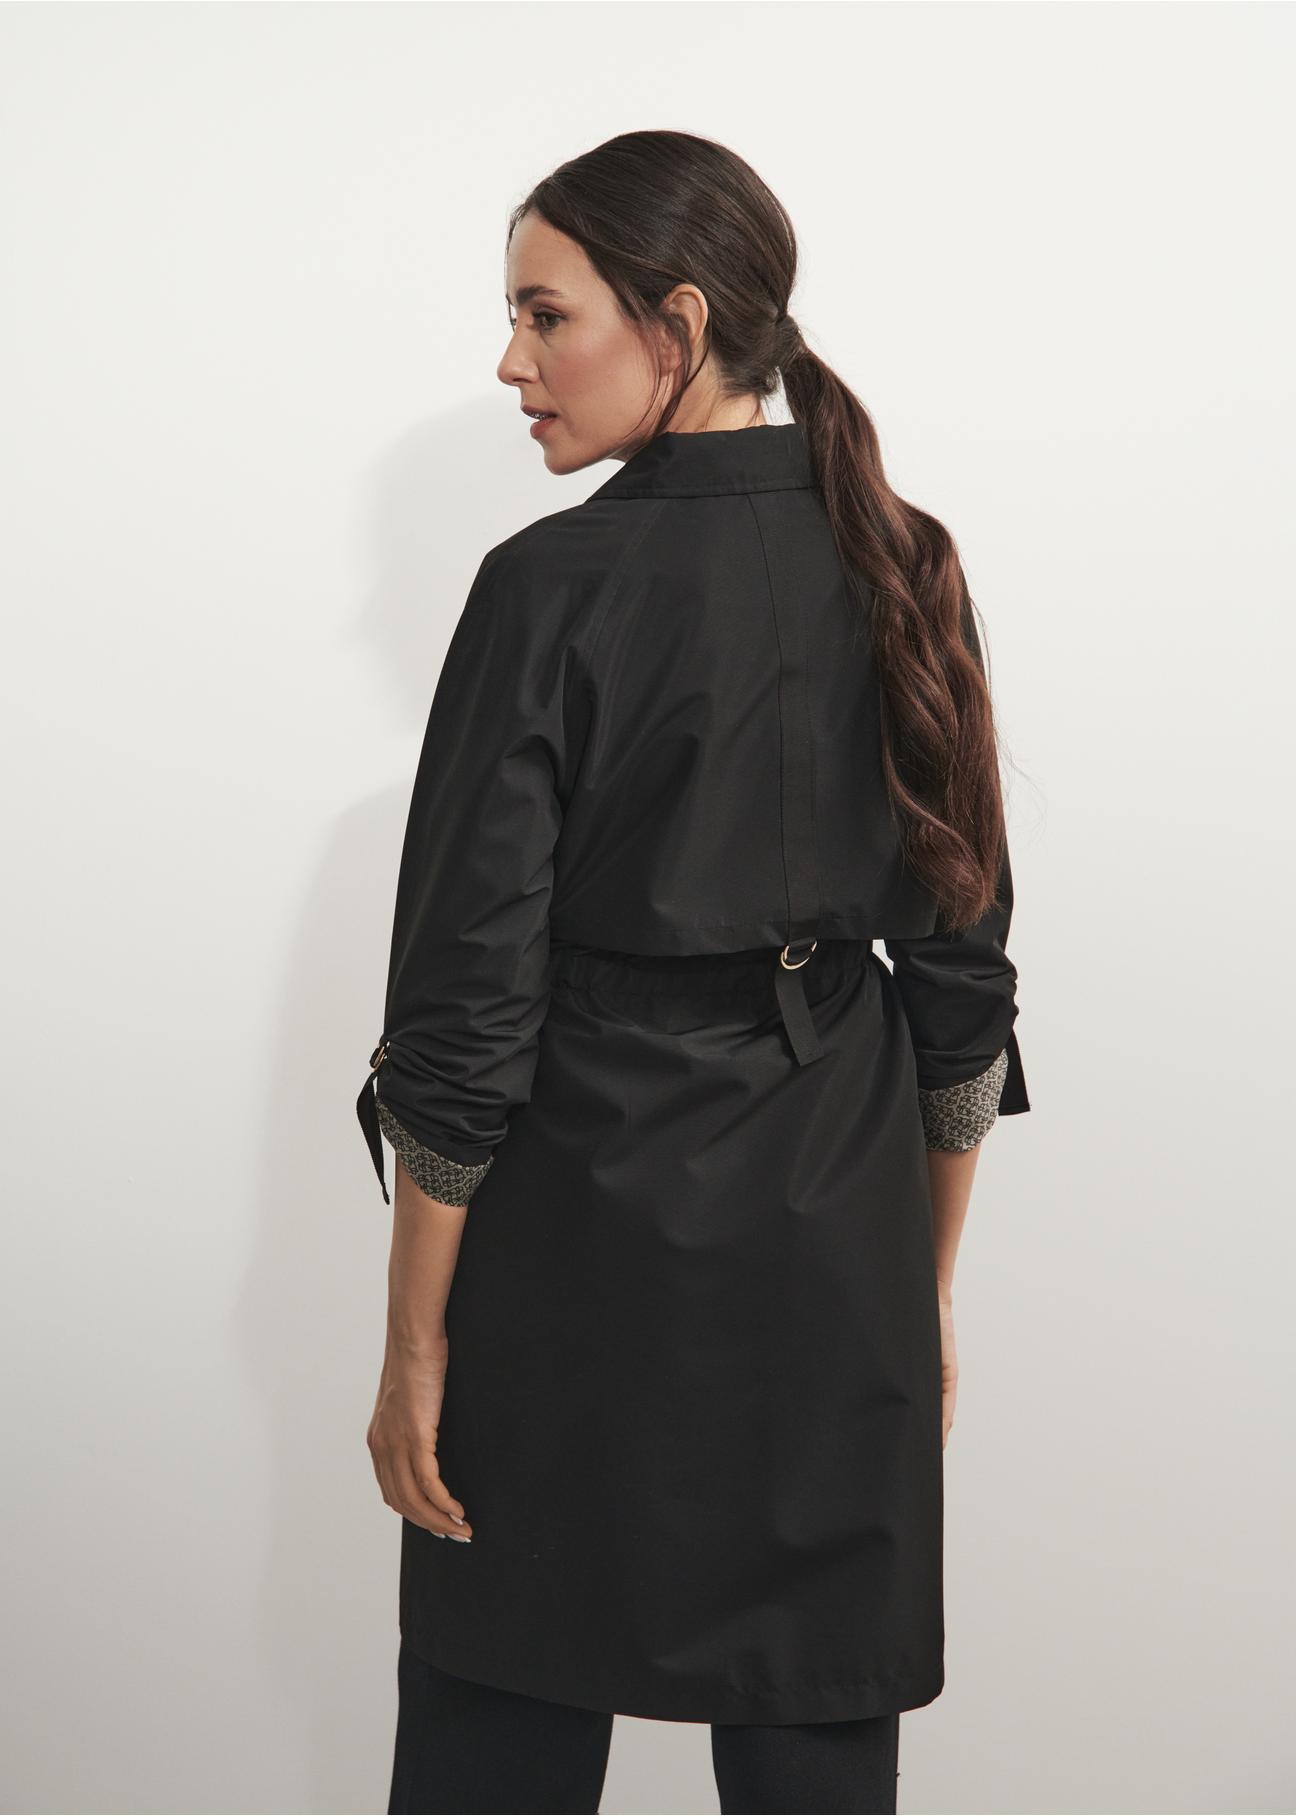 Czarny płaszcz damski z troczkami KURDT-0439-99(W24)